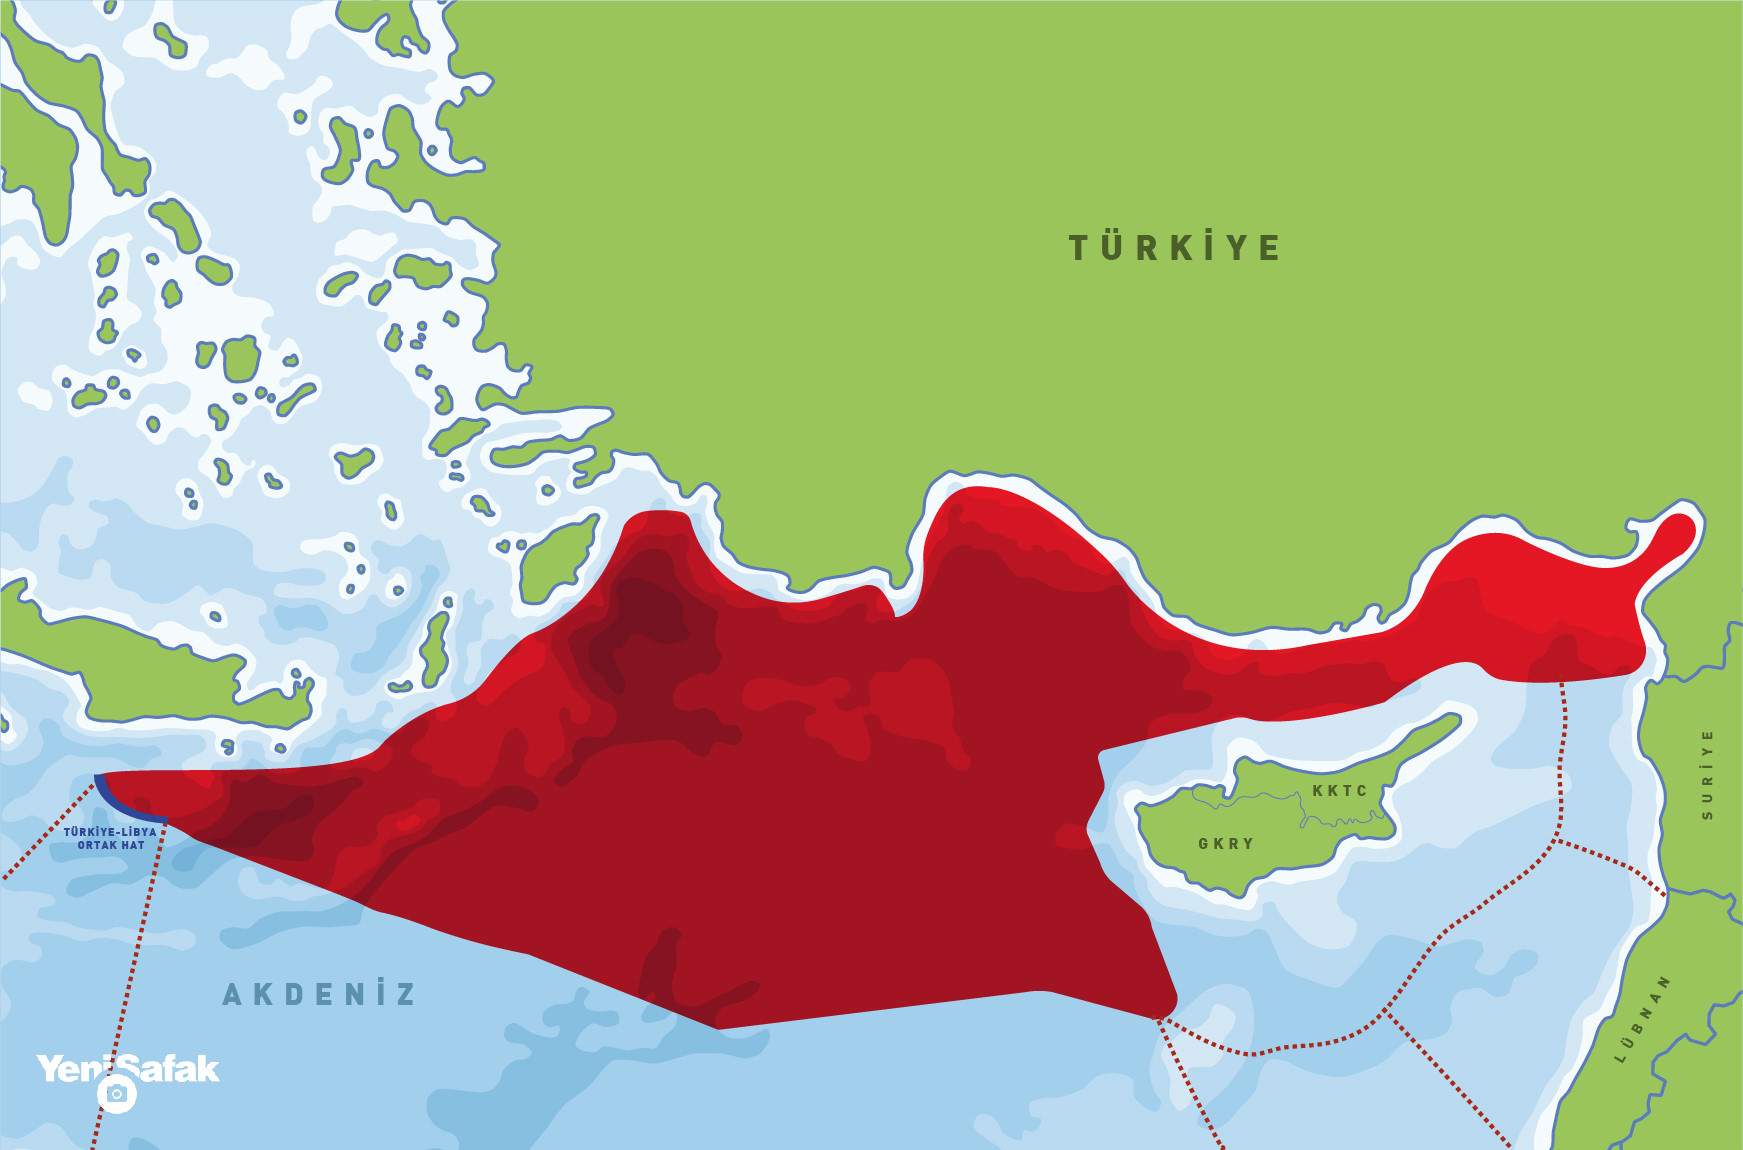 Αποτέλεσμα εικόνας για EKTAKTO: Οι Τούρκοι στήνουν σκηνικό σύγκρουσης – Στοχοποιούν Ίμια & Κρήτη με χάρτες-σοκ